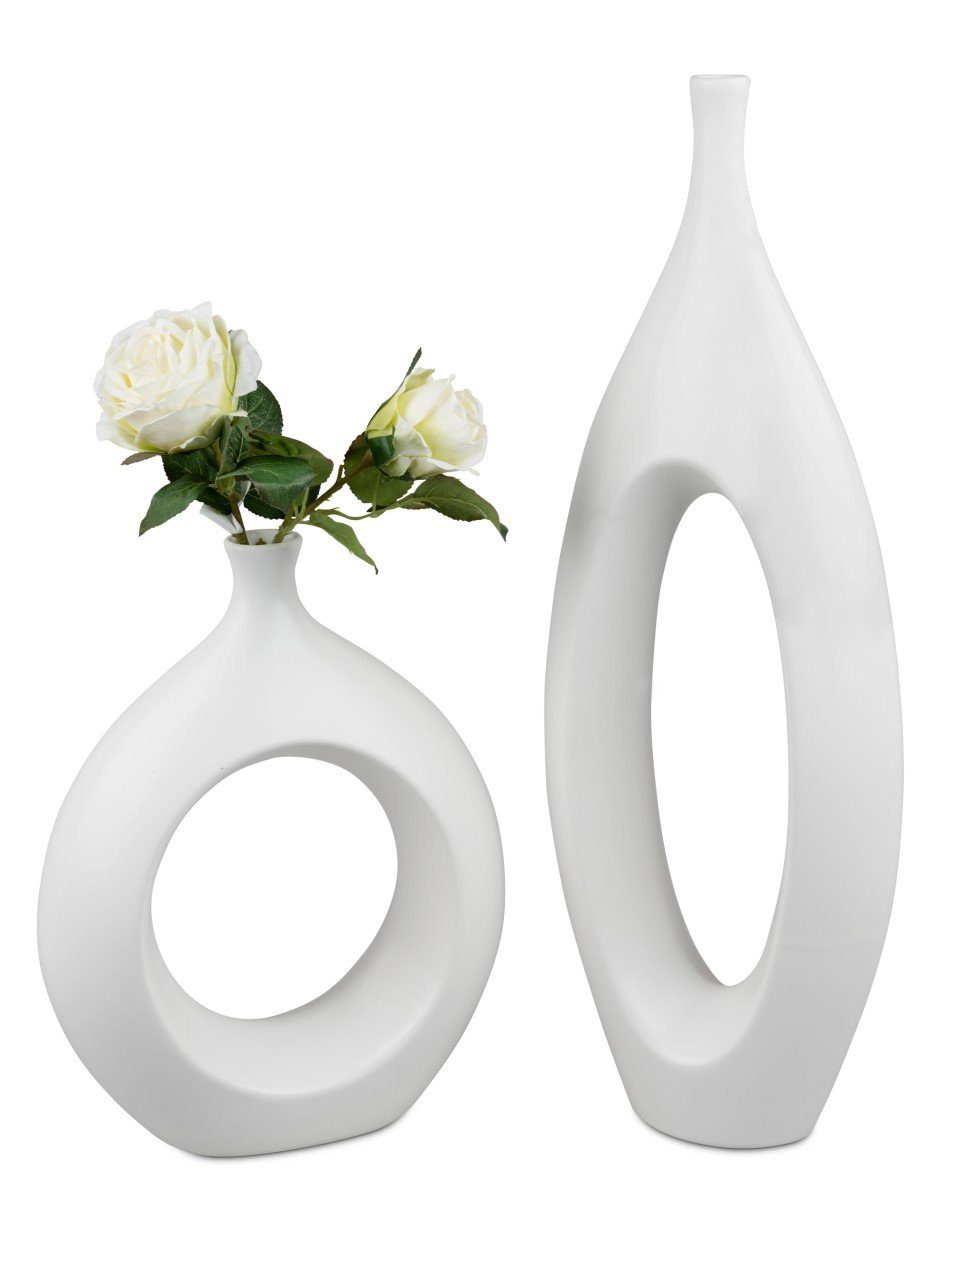 Lochdesign, Weiß H:60cm Keramik formano Bodenvase B:22cm